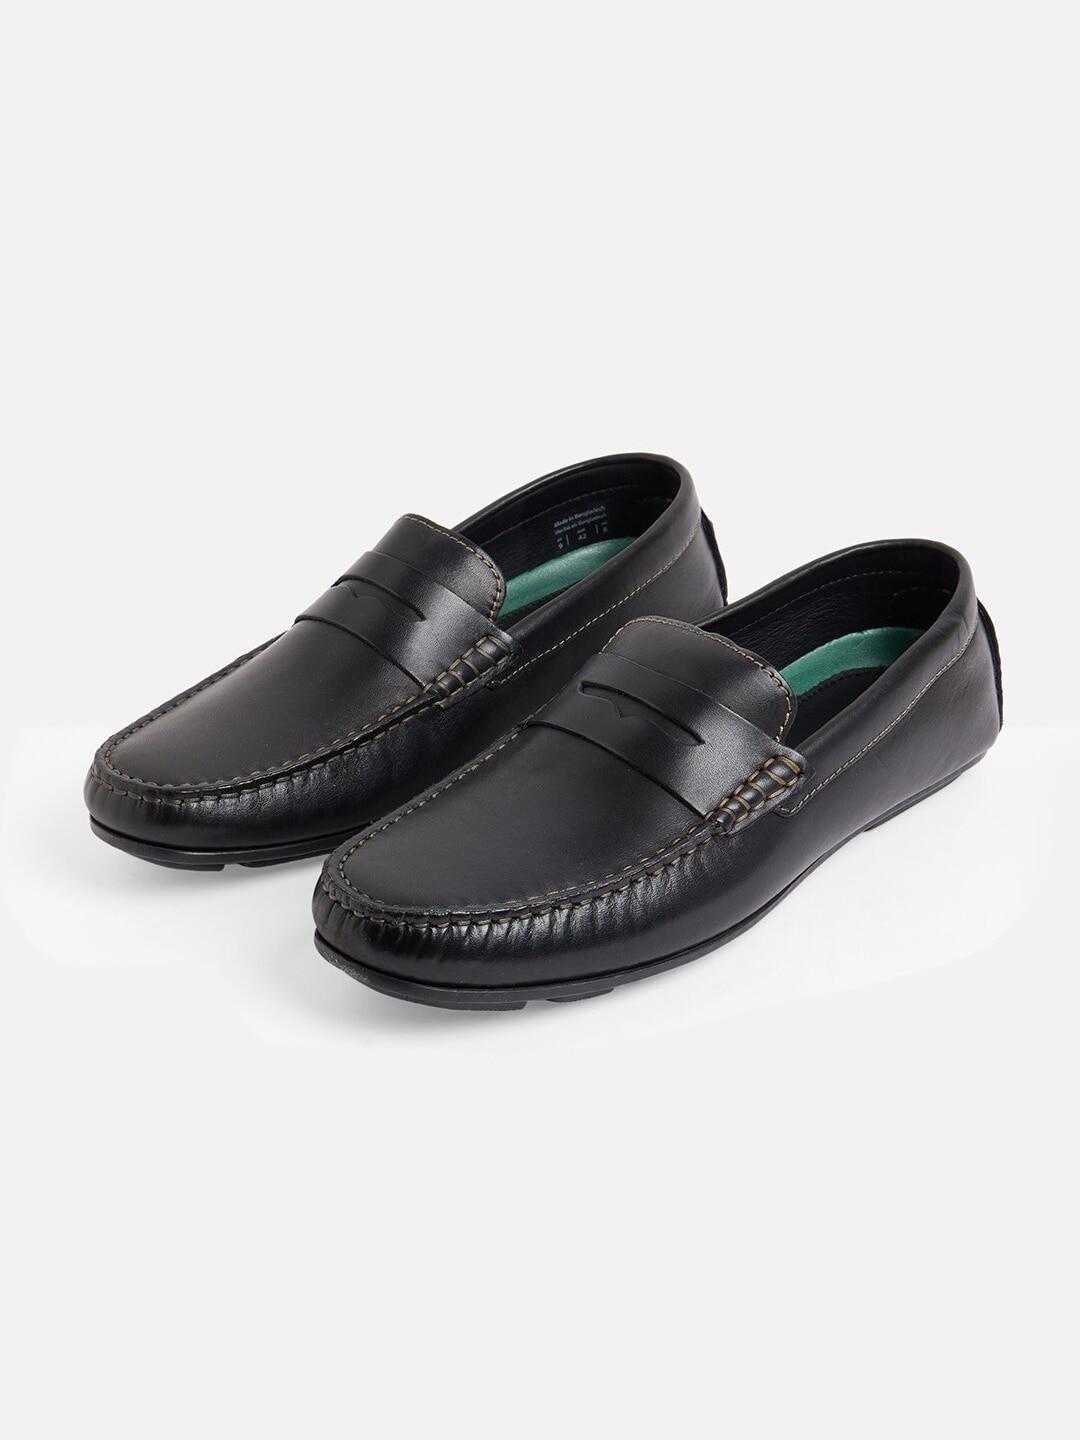 ALDO Men Black Leather Formal Loafers